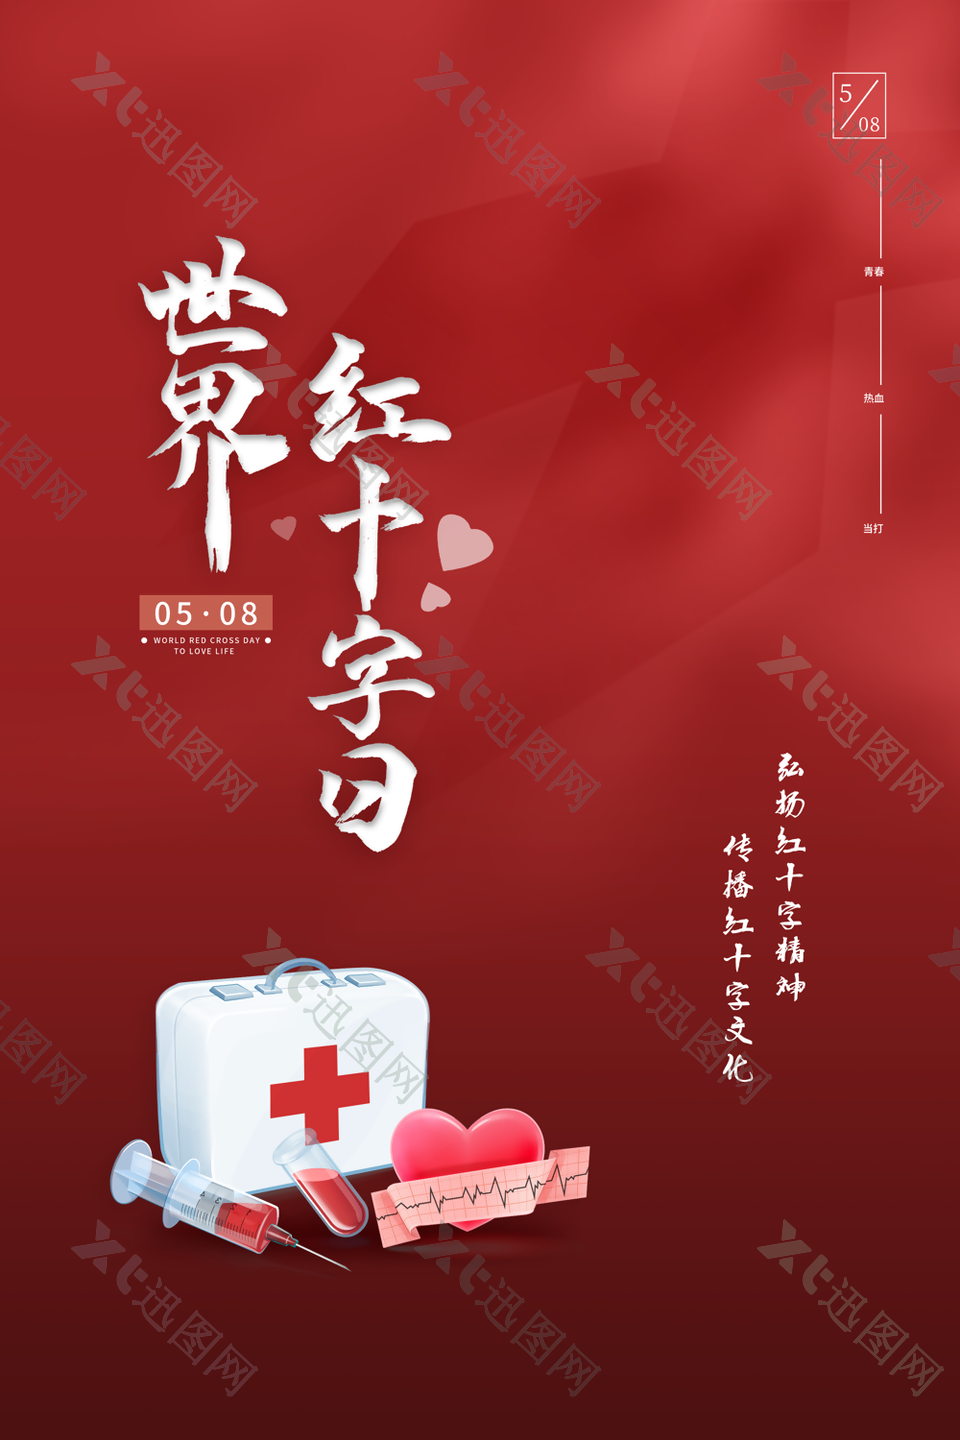 世界红十字日宣传海报设计